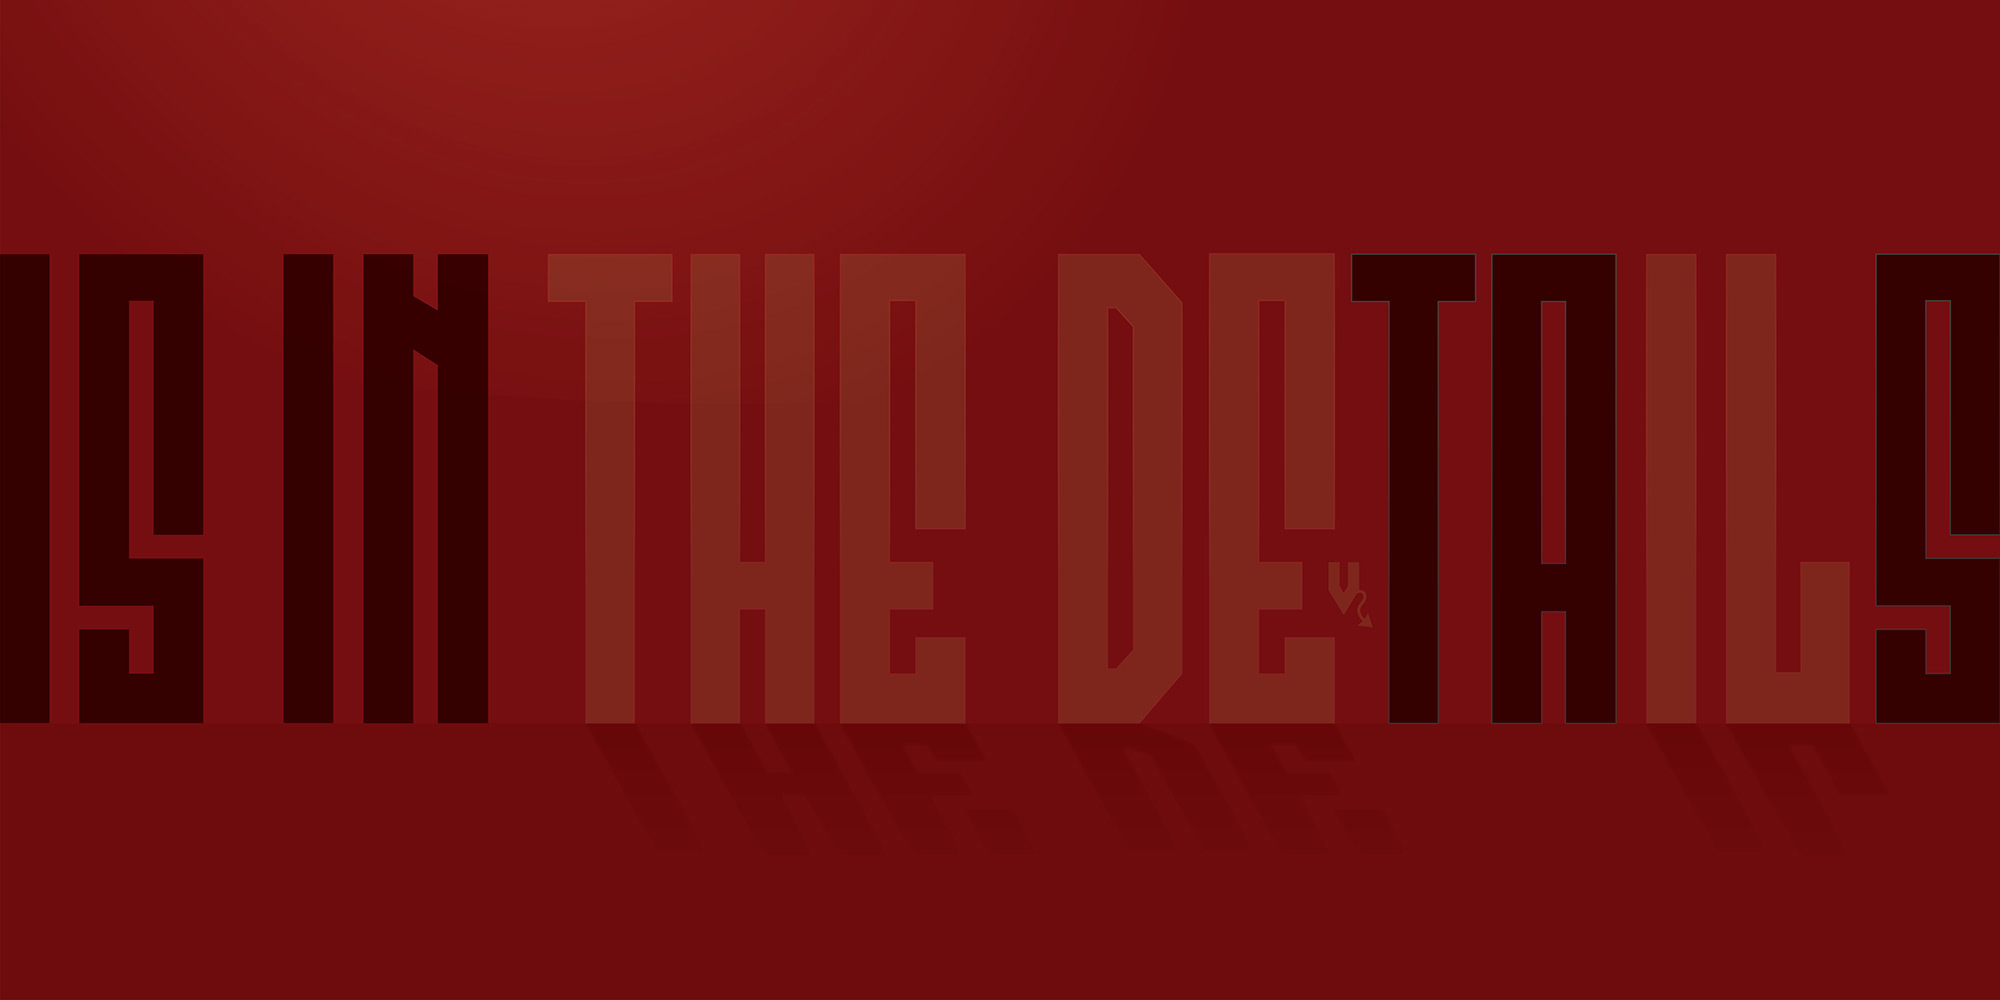 Jeff Kern design for "Devil in the Details"